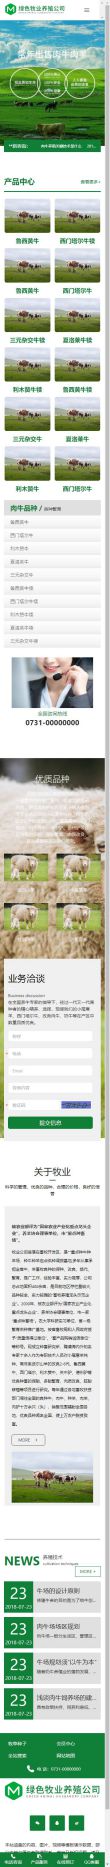 畜牧養殖基地網站模板,畜牧養殖基地網頁模板,畜牧養殖基地響應式網站模板